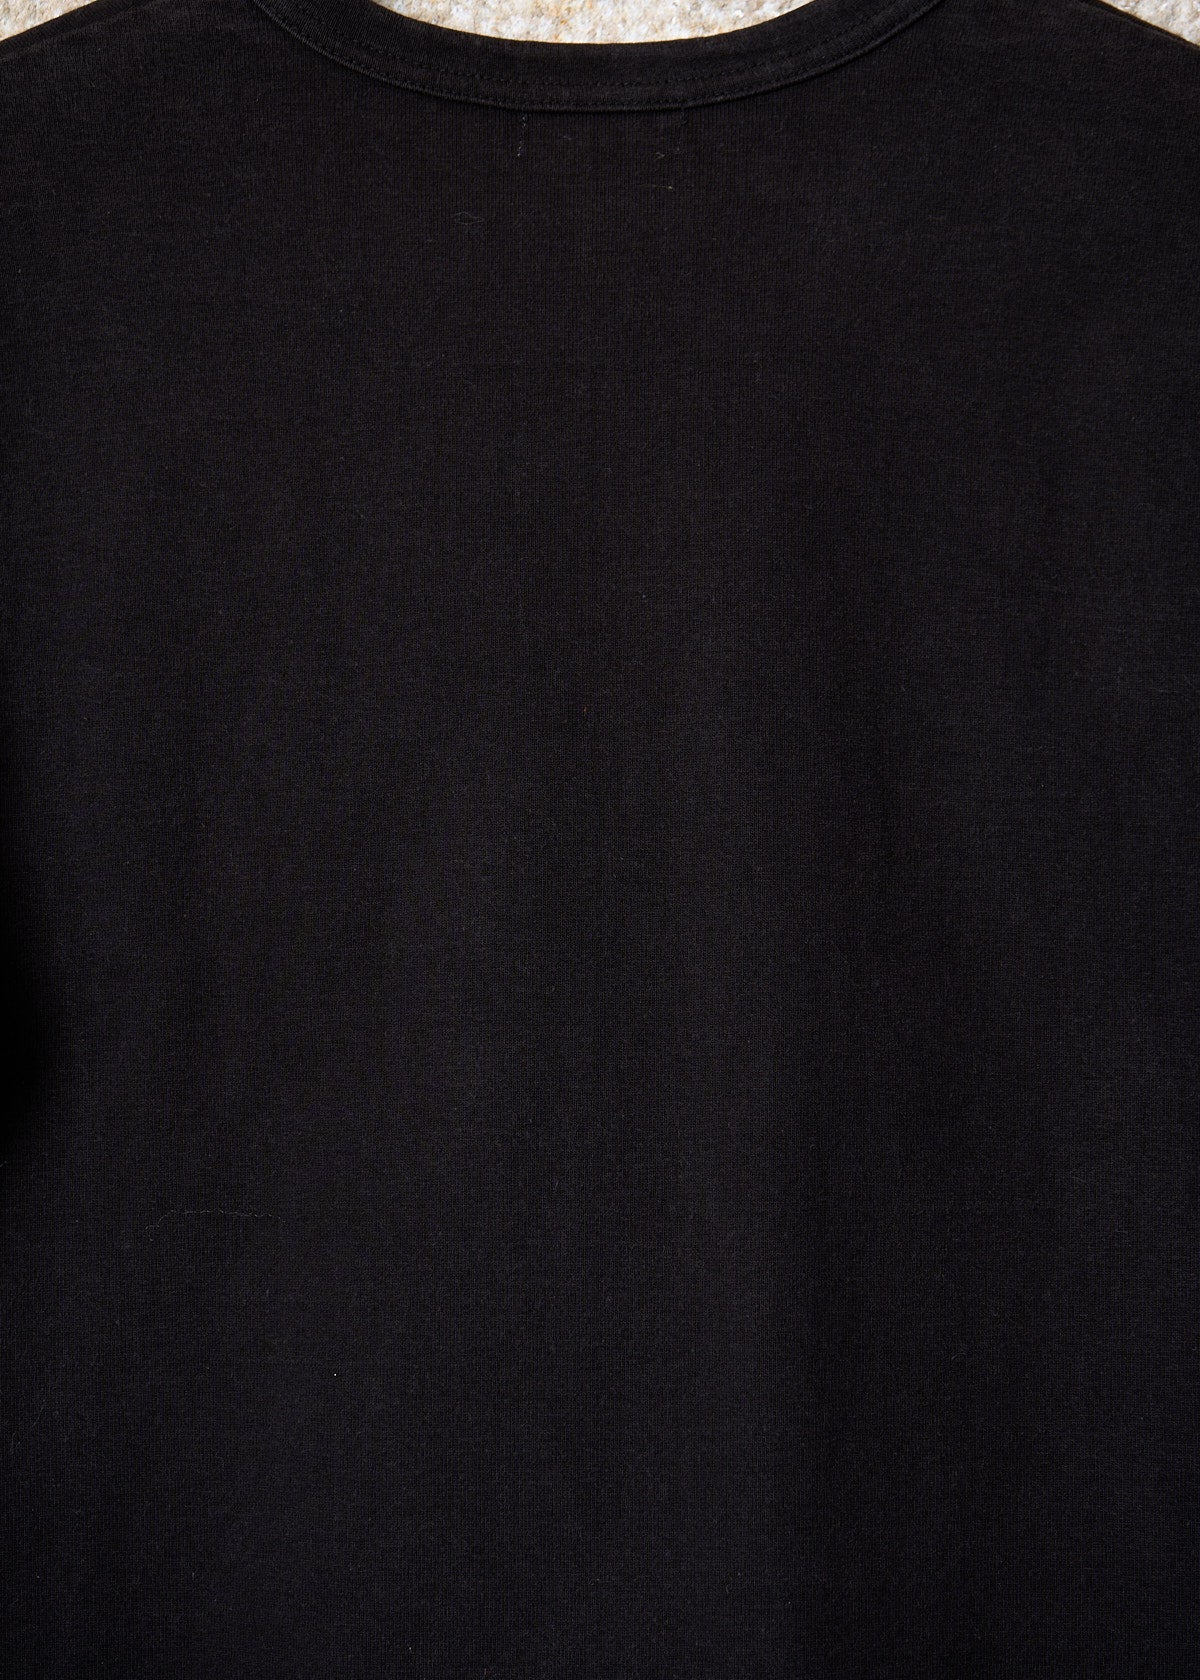 CDG Homme Black Split Logo Longlseeve SS2002 - Medium